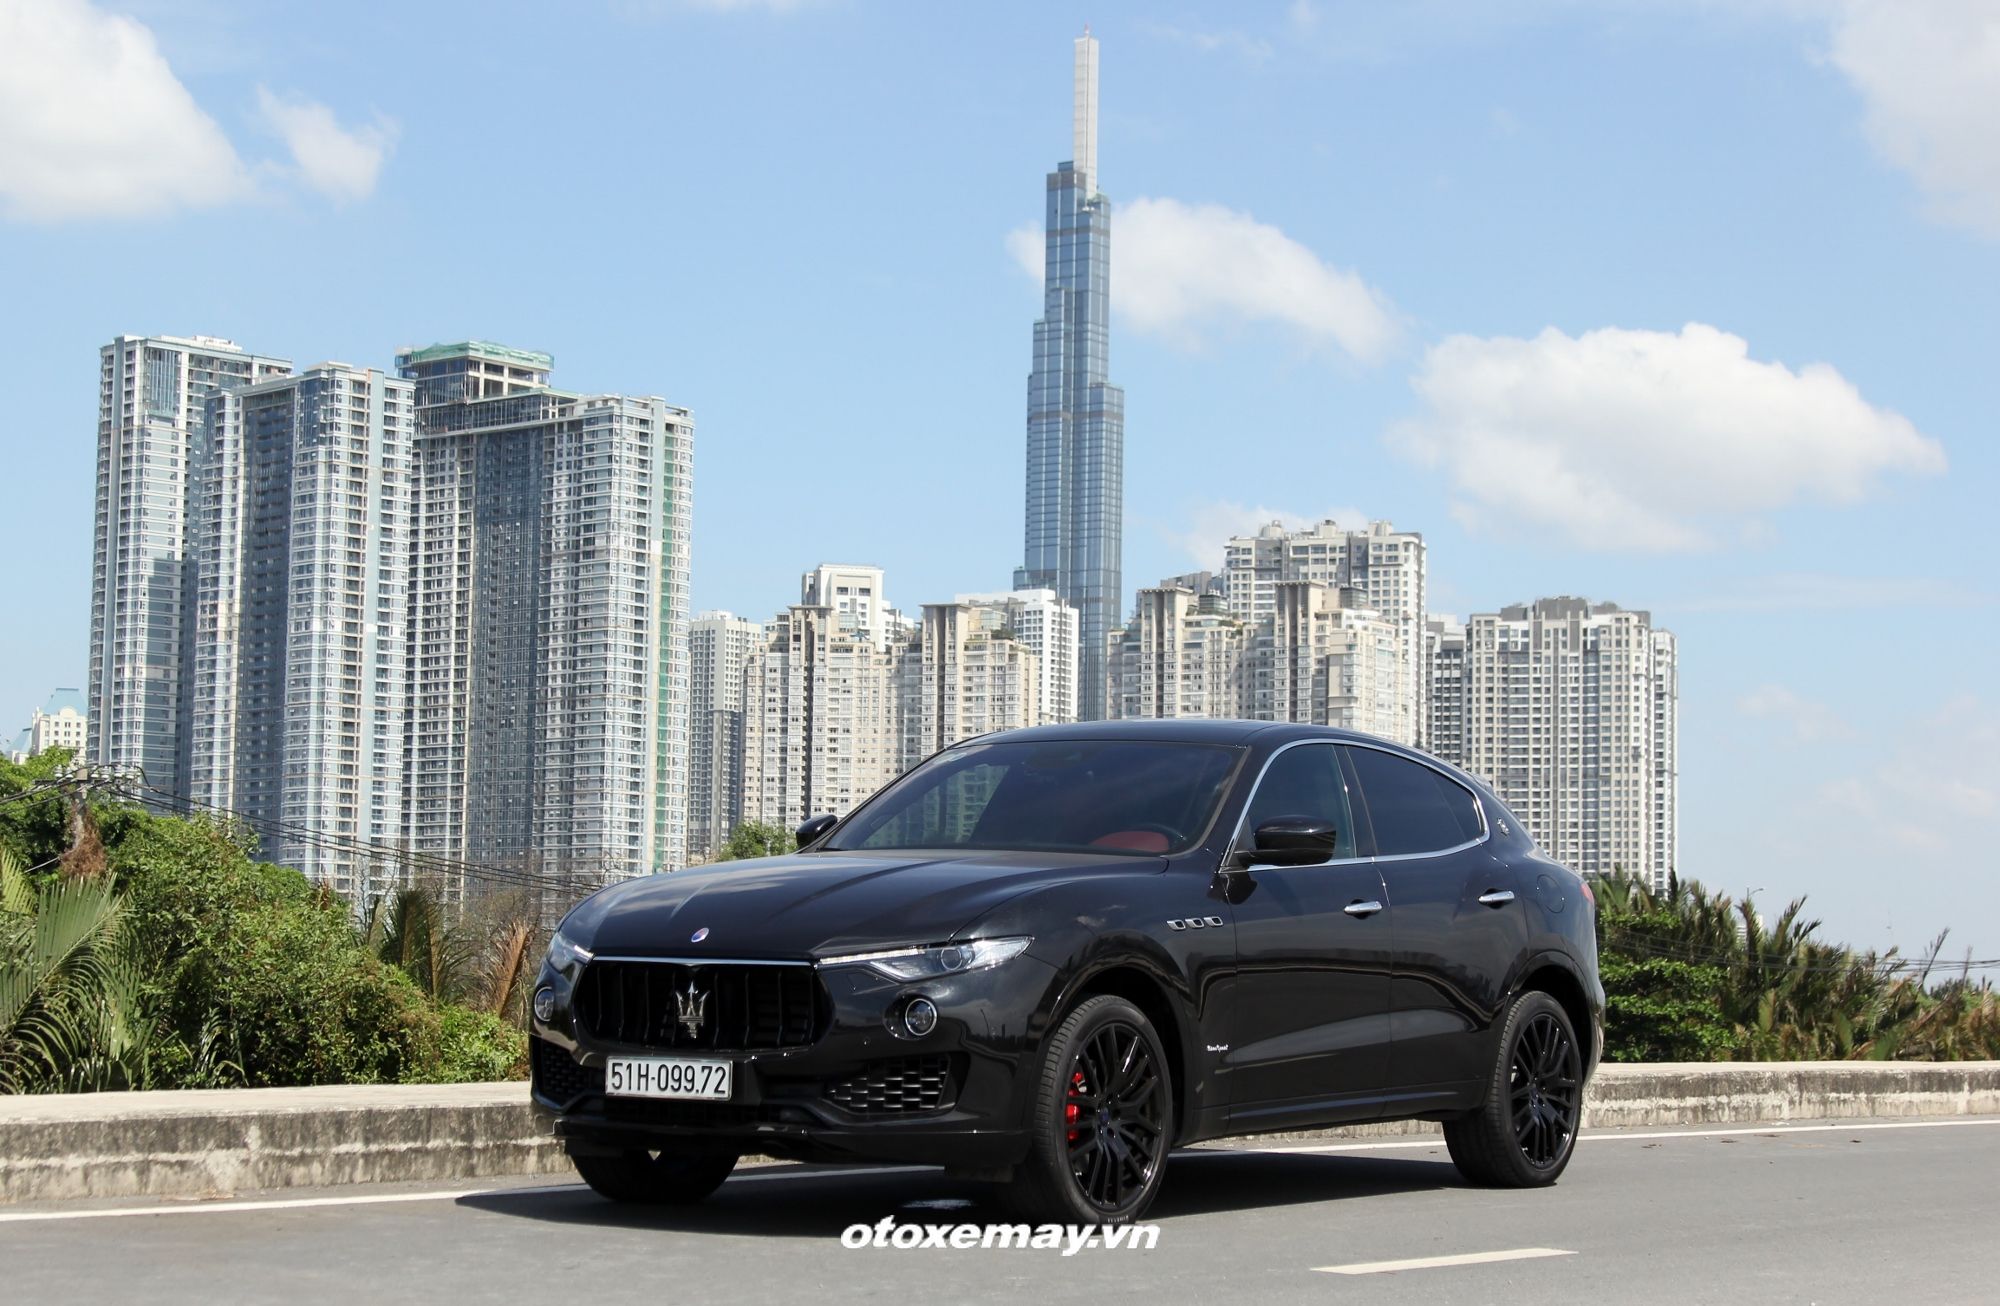 SUV tiên phong Maserati Levante tăng tốc bất ngờ trên phố Sài thành